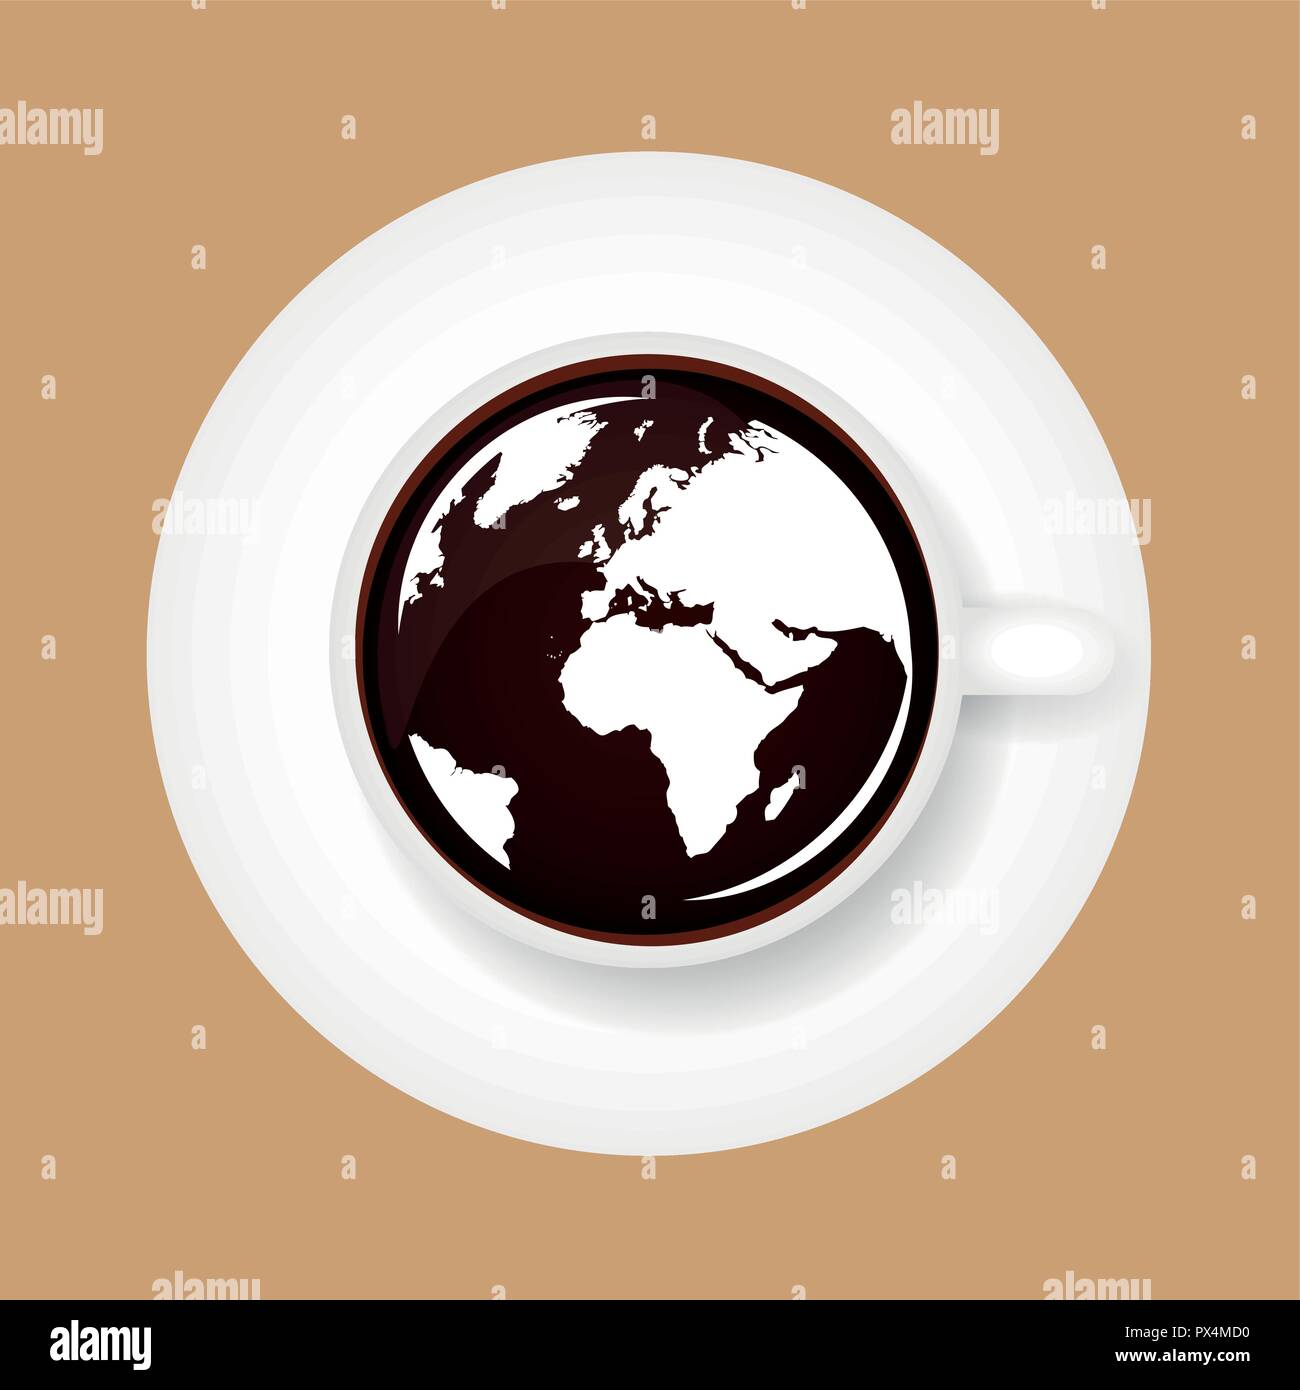 Weltkarte in Kaffee Tasse Vektor-illustration EPS 10. Stock Vektor